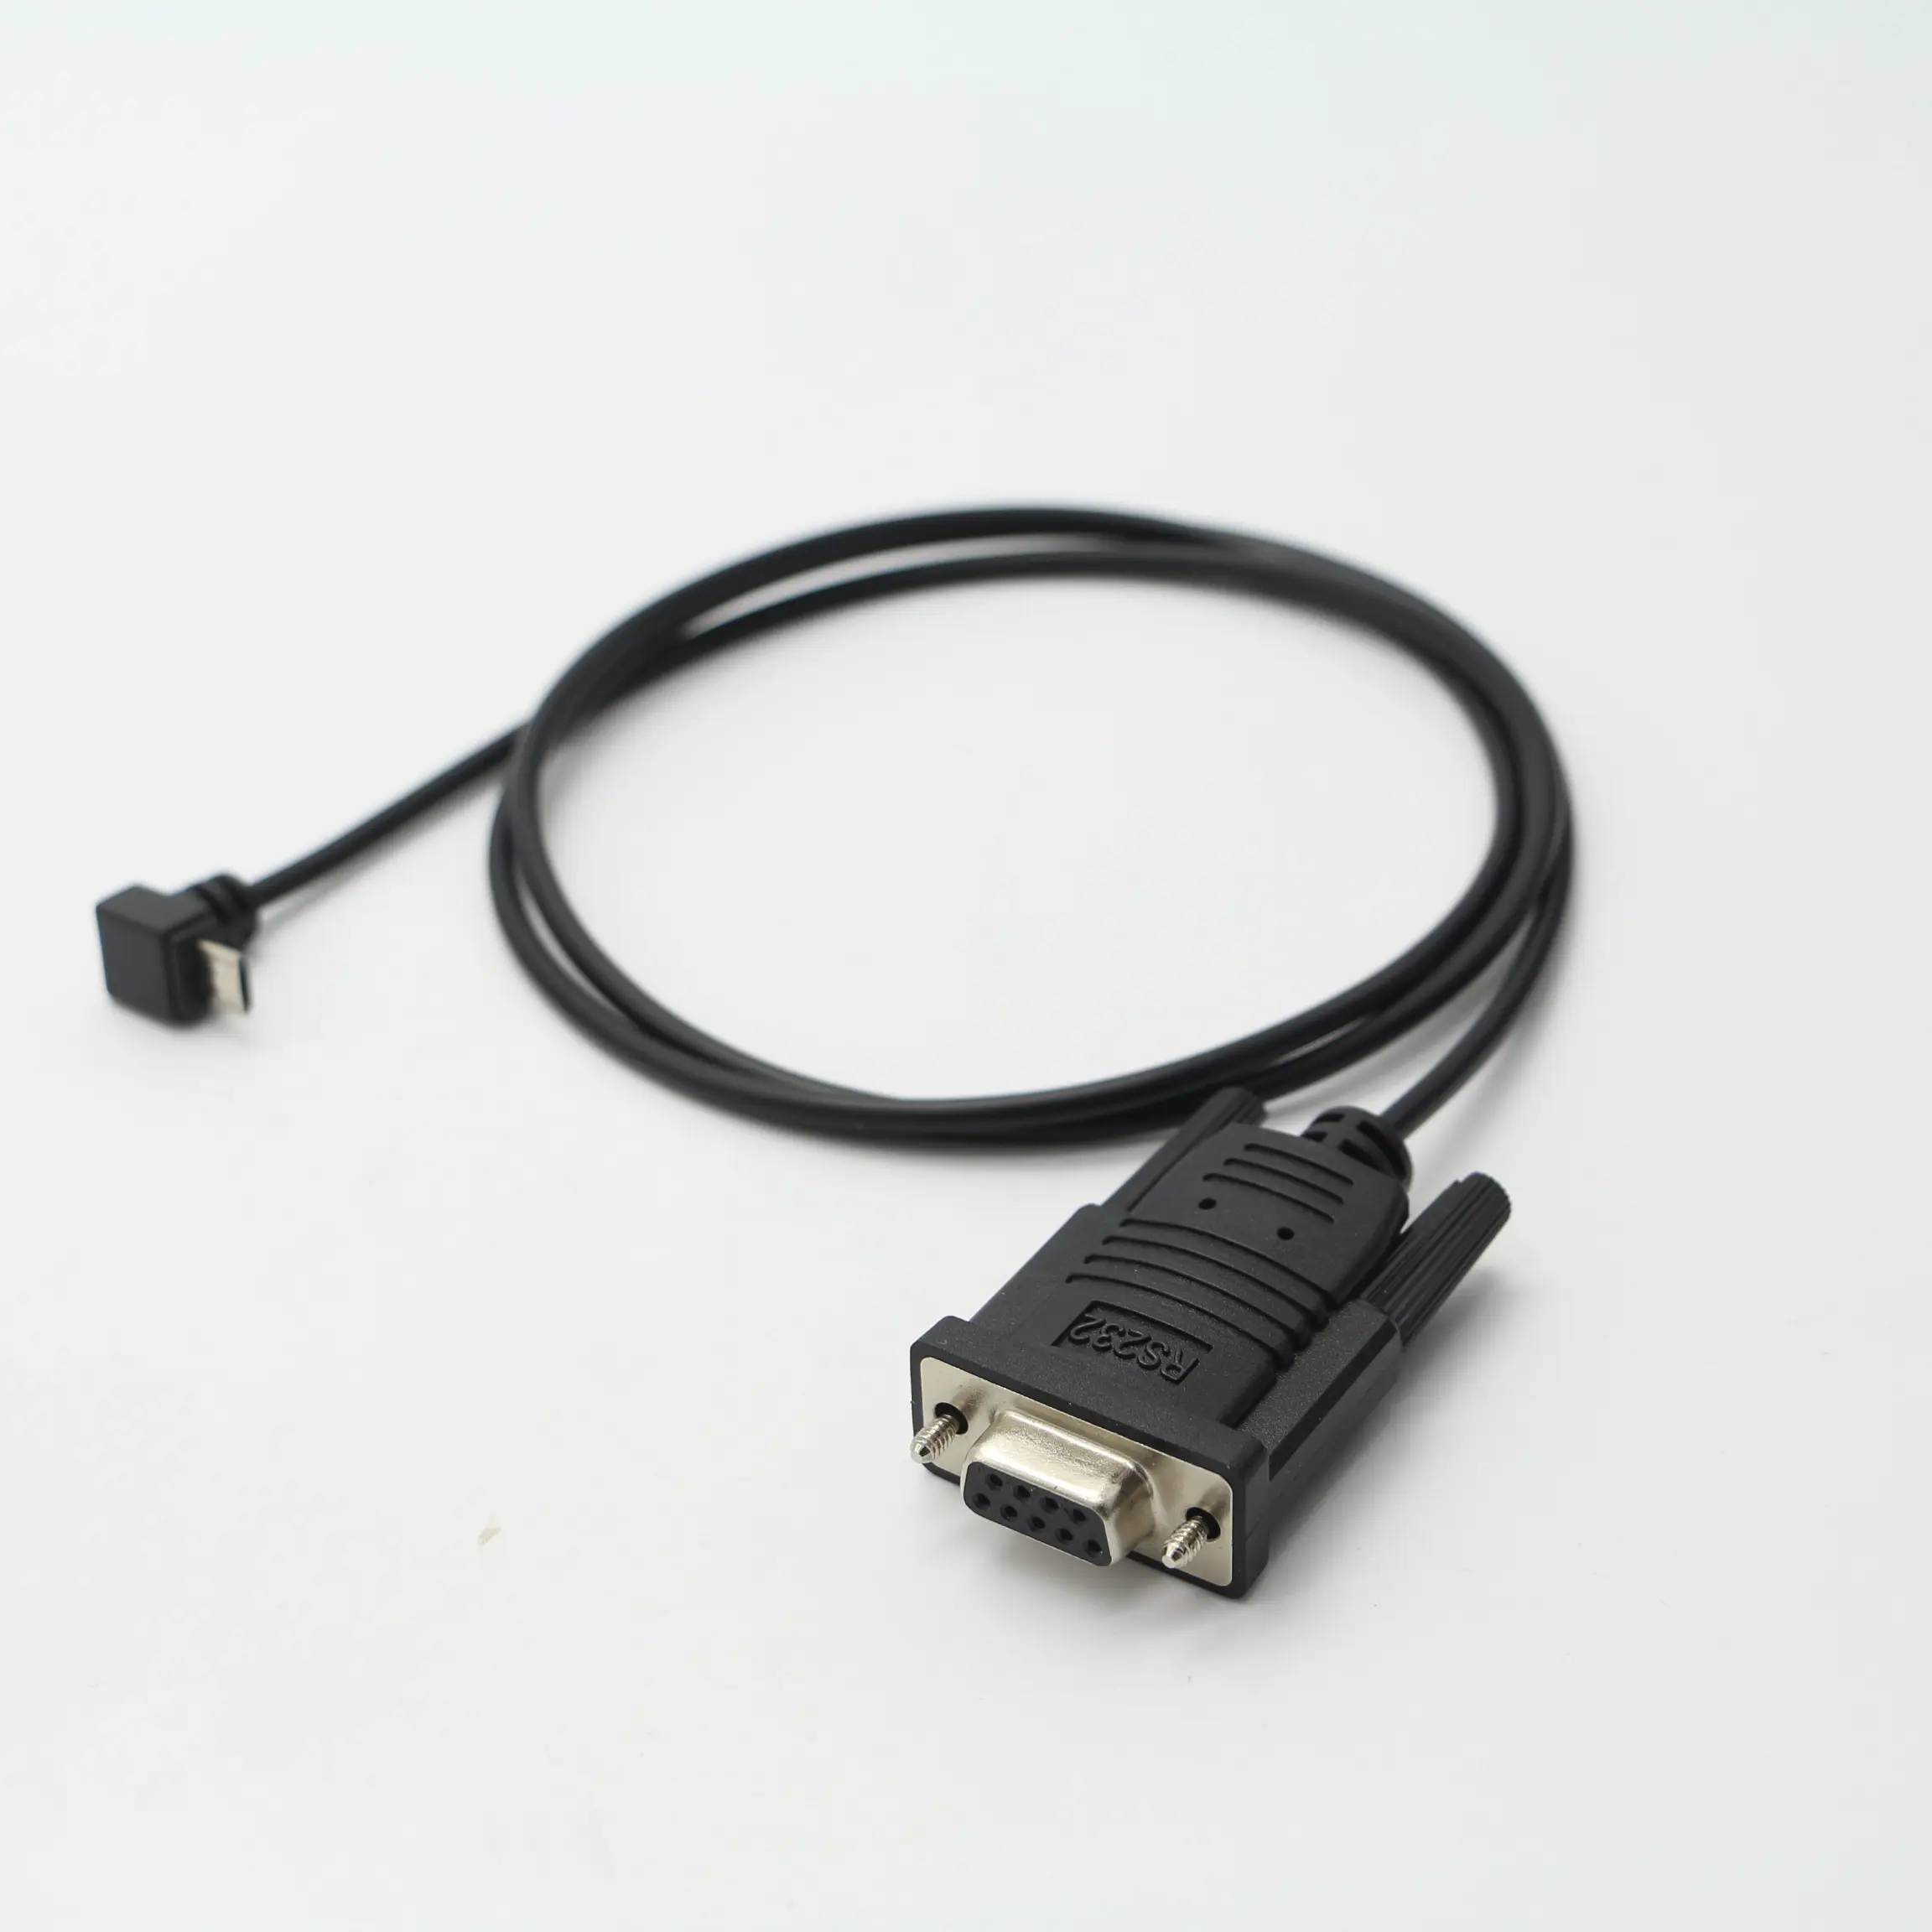 Oem Fabriek Uc232 Rs232 Naar Micro Usb Seriële Kabel Met Ftdi Db9 Mannelijke Volledige Pinout Compatibel